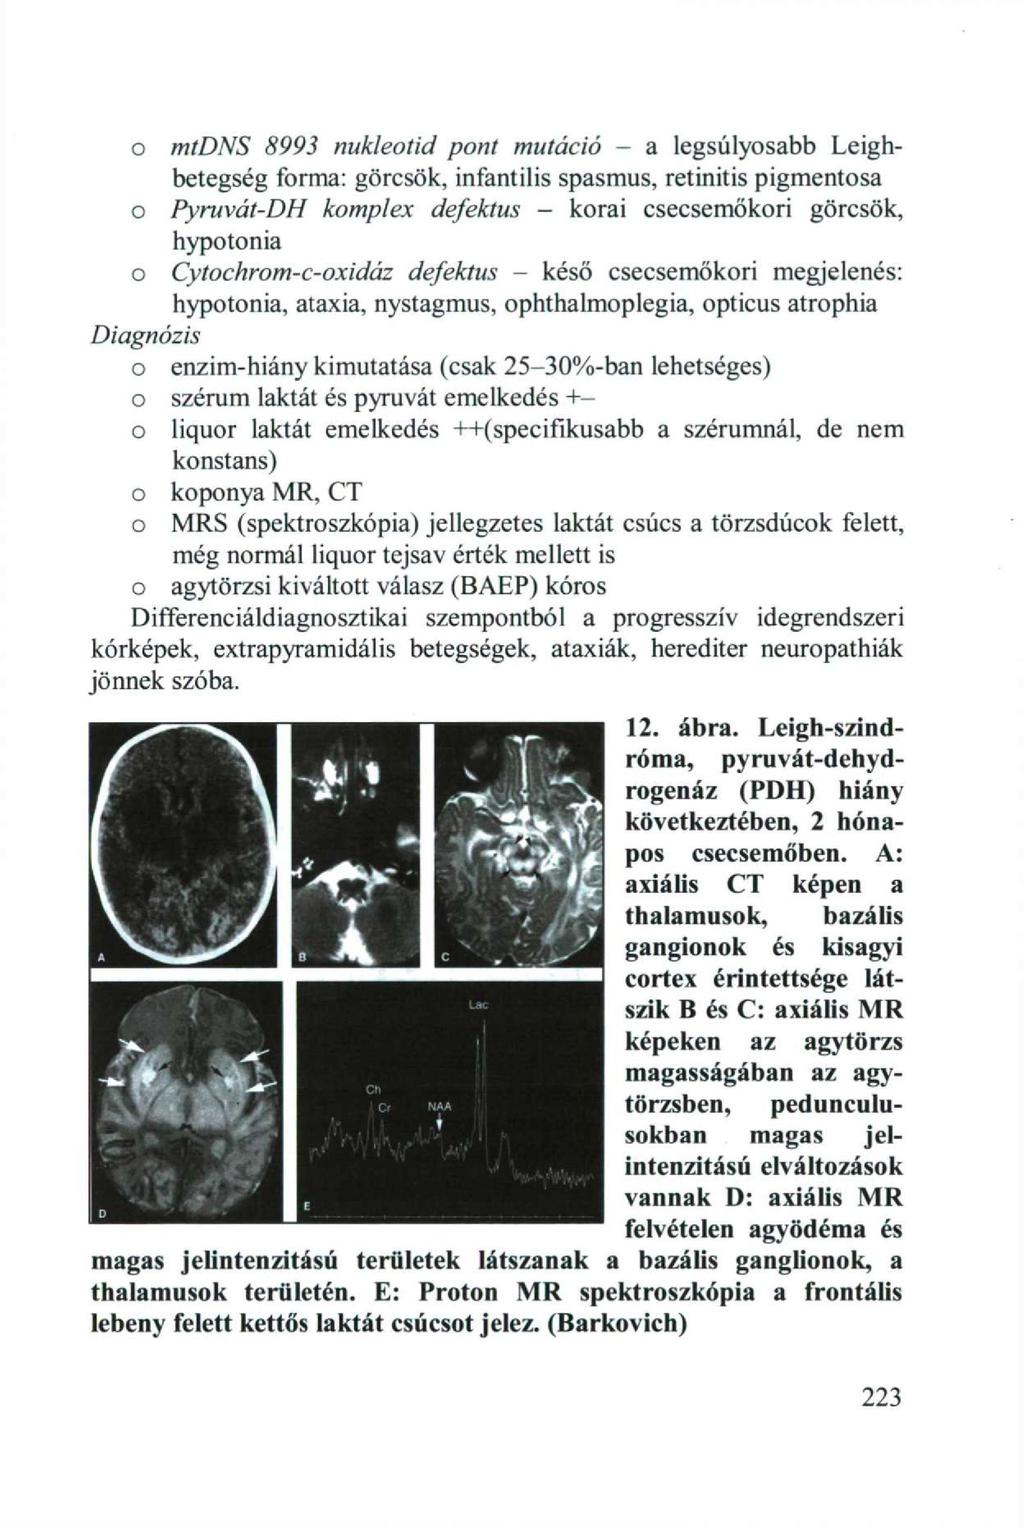 o mtdns 8993 nukleotid pont mutáció - a legsúlyosabb Leighbetegség forma: görcsök, infantilis spasmus, retinitis pigmentosa o Pyruvát-DH komplex defektus - korai csecsemőkori görcsök, hypotonia o